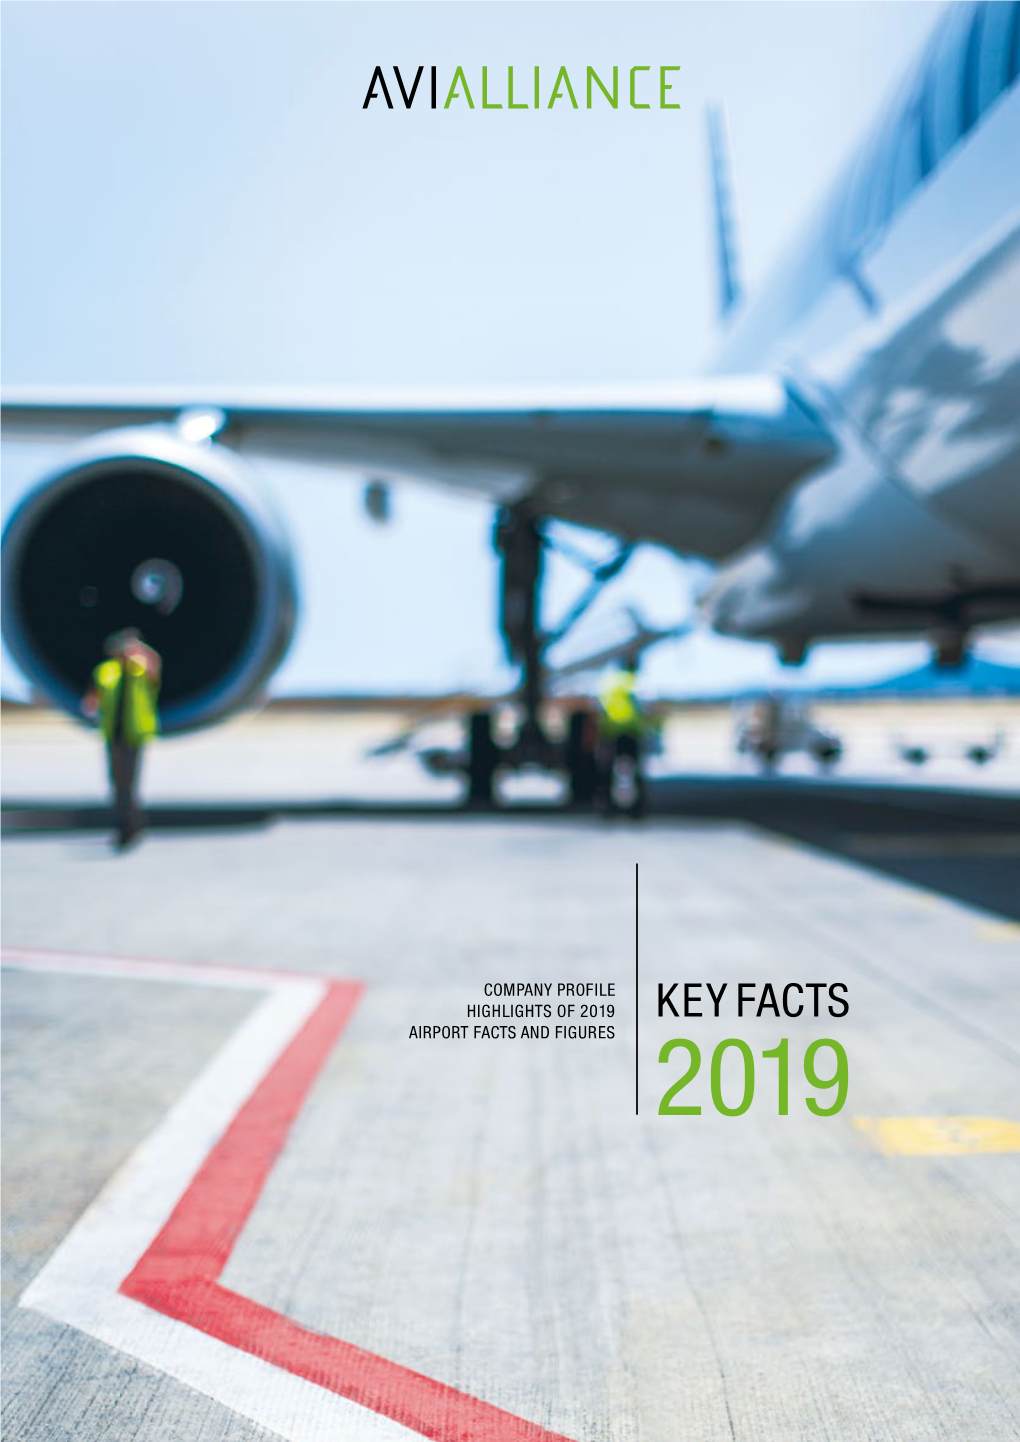 Avialliance Key Facts 2019